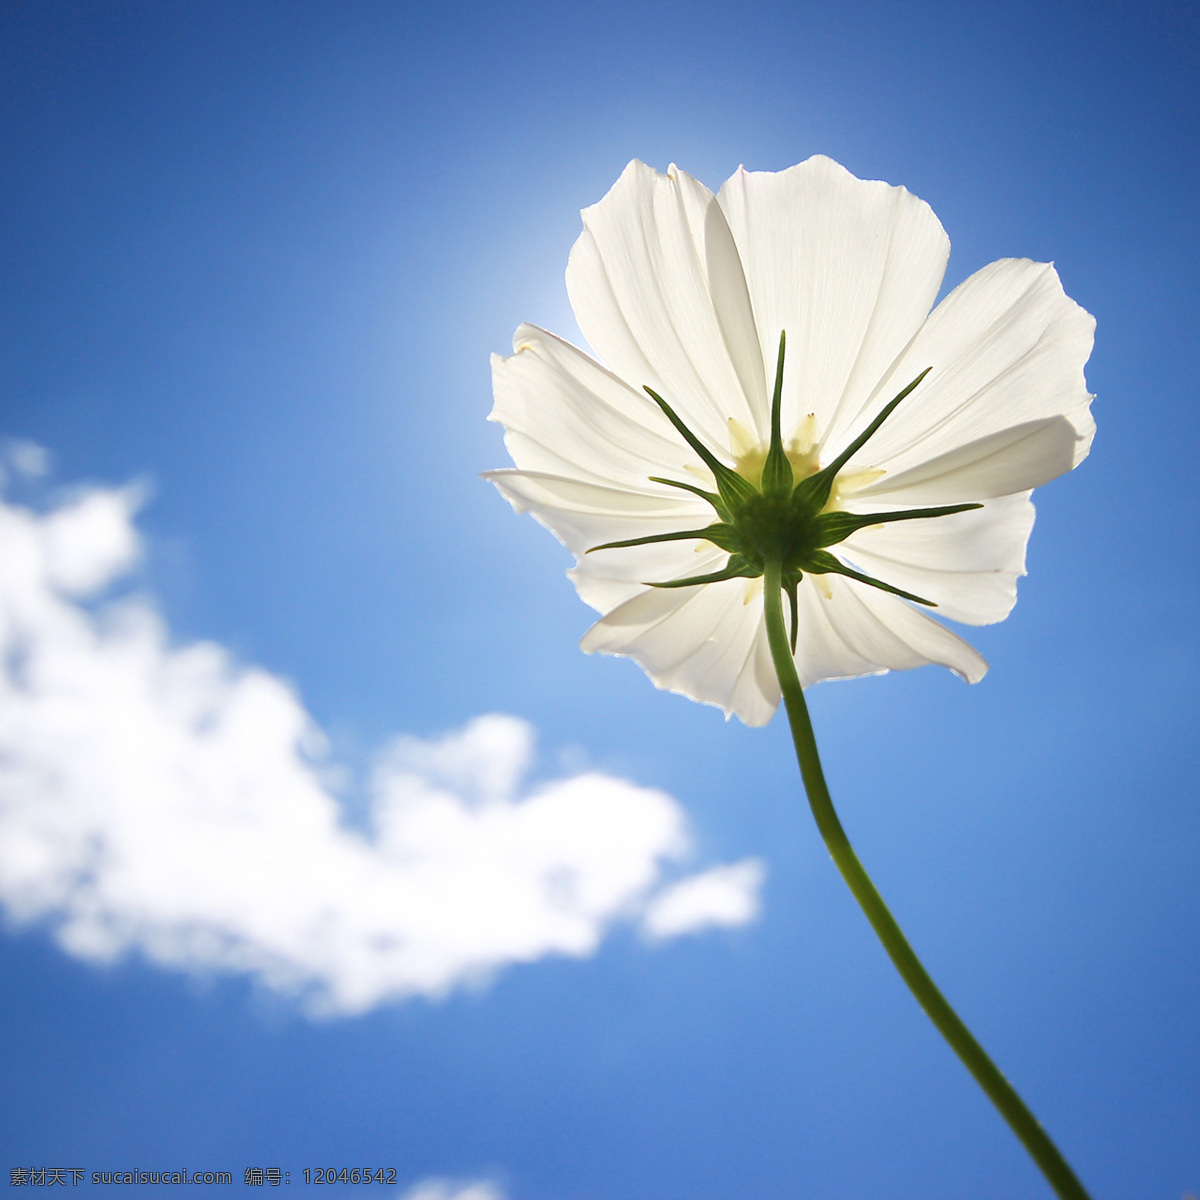 蓝天 白花 白云 鲜花 绿色 自然景观 白色 生物世界 花草